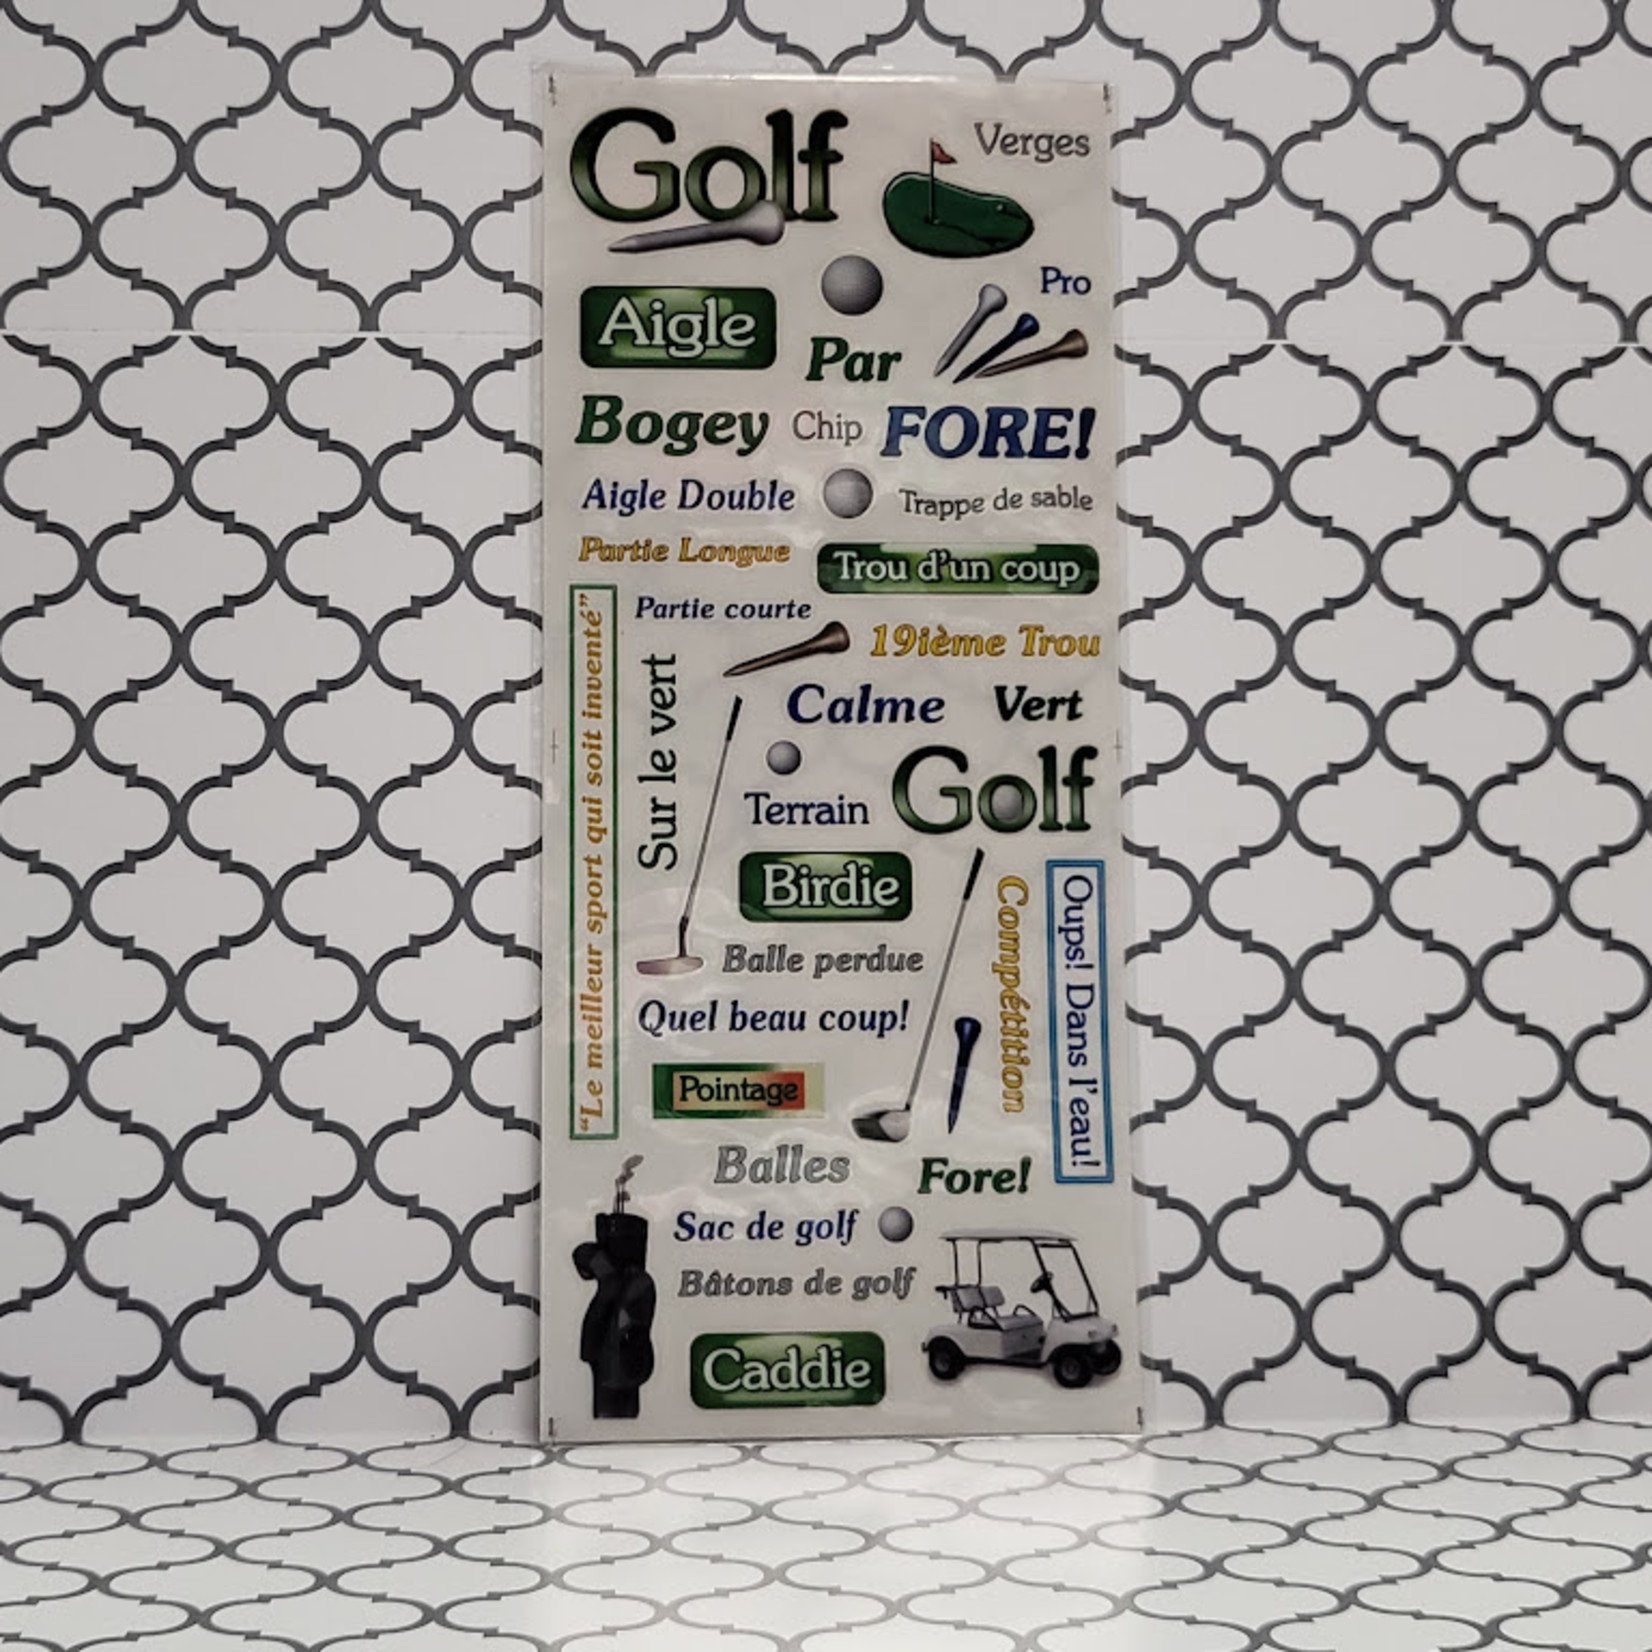 Sticker Sheet - Golf